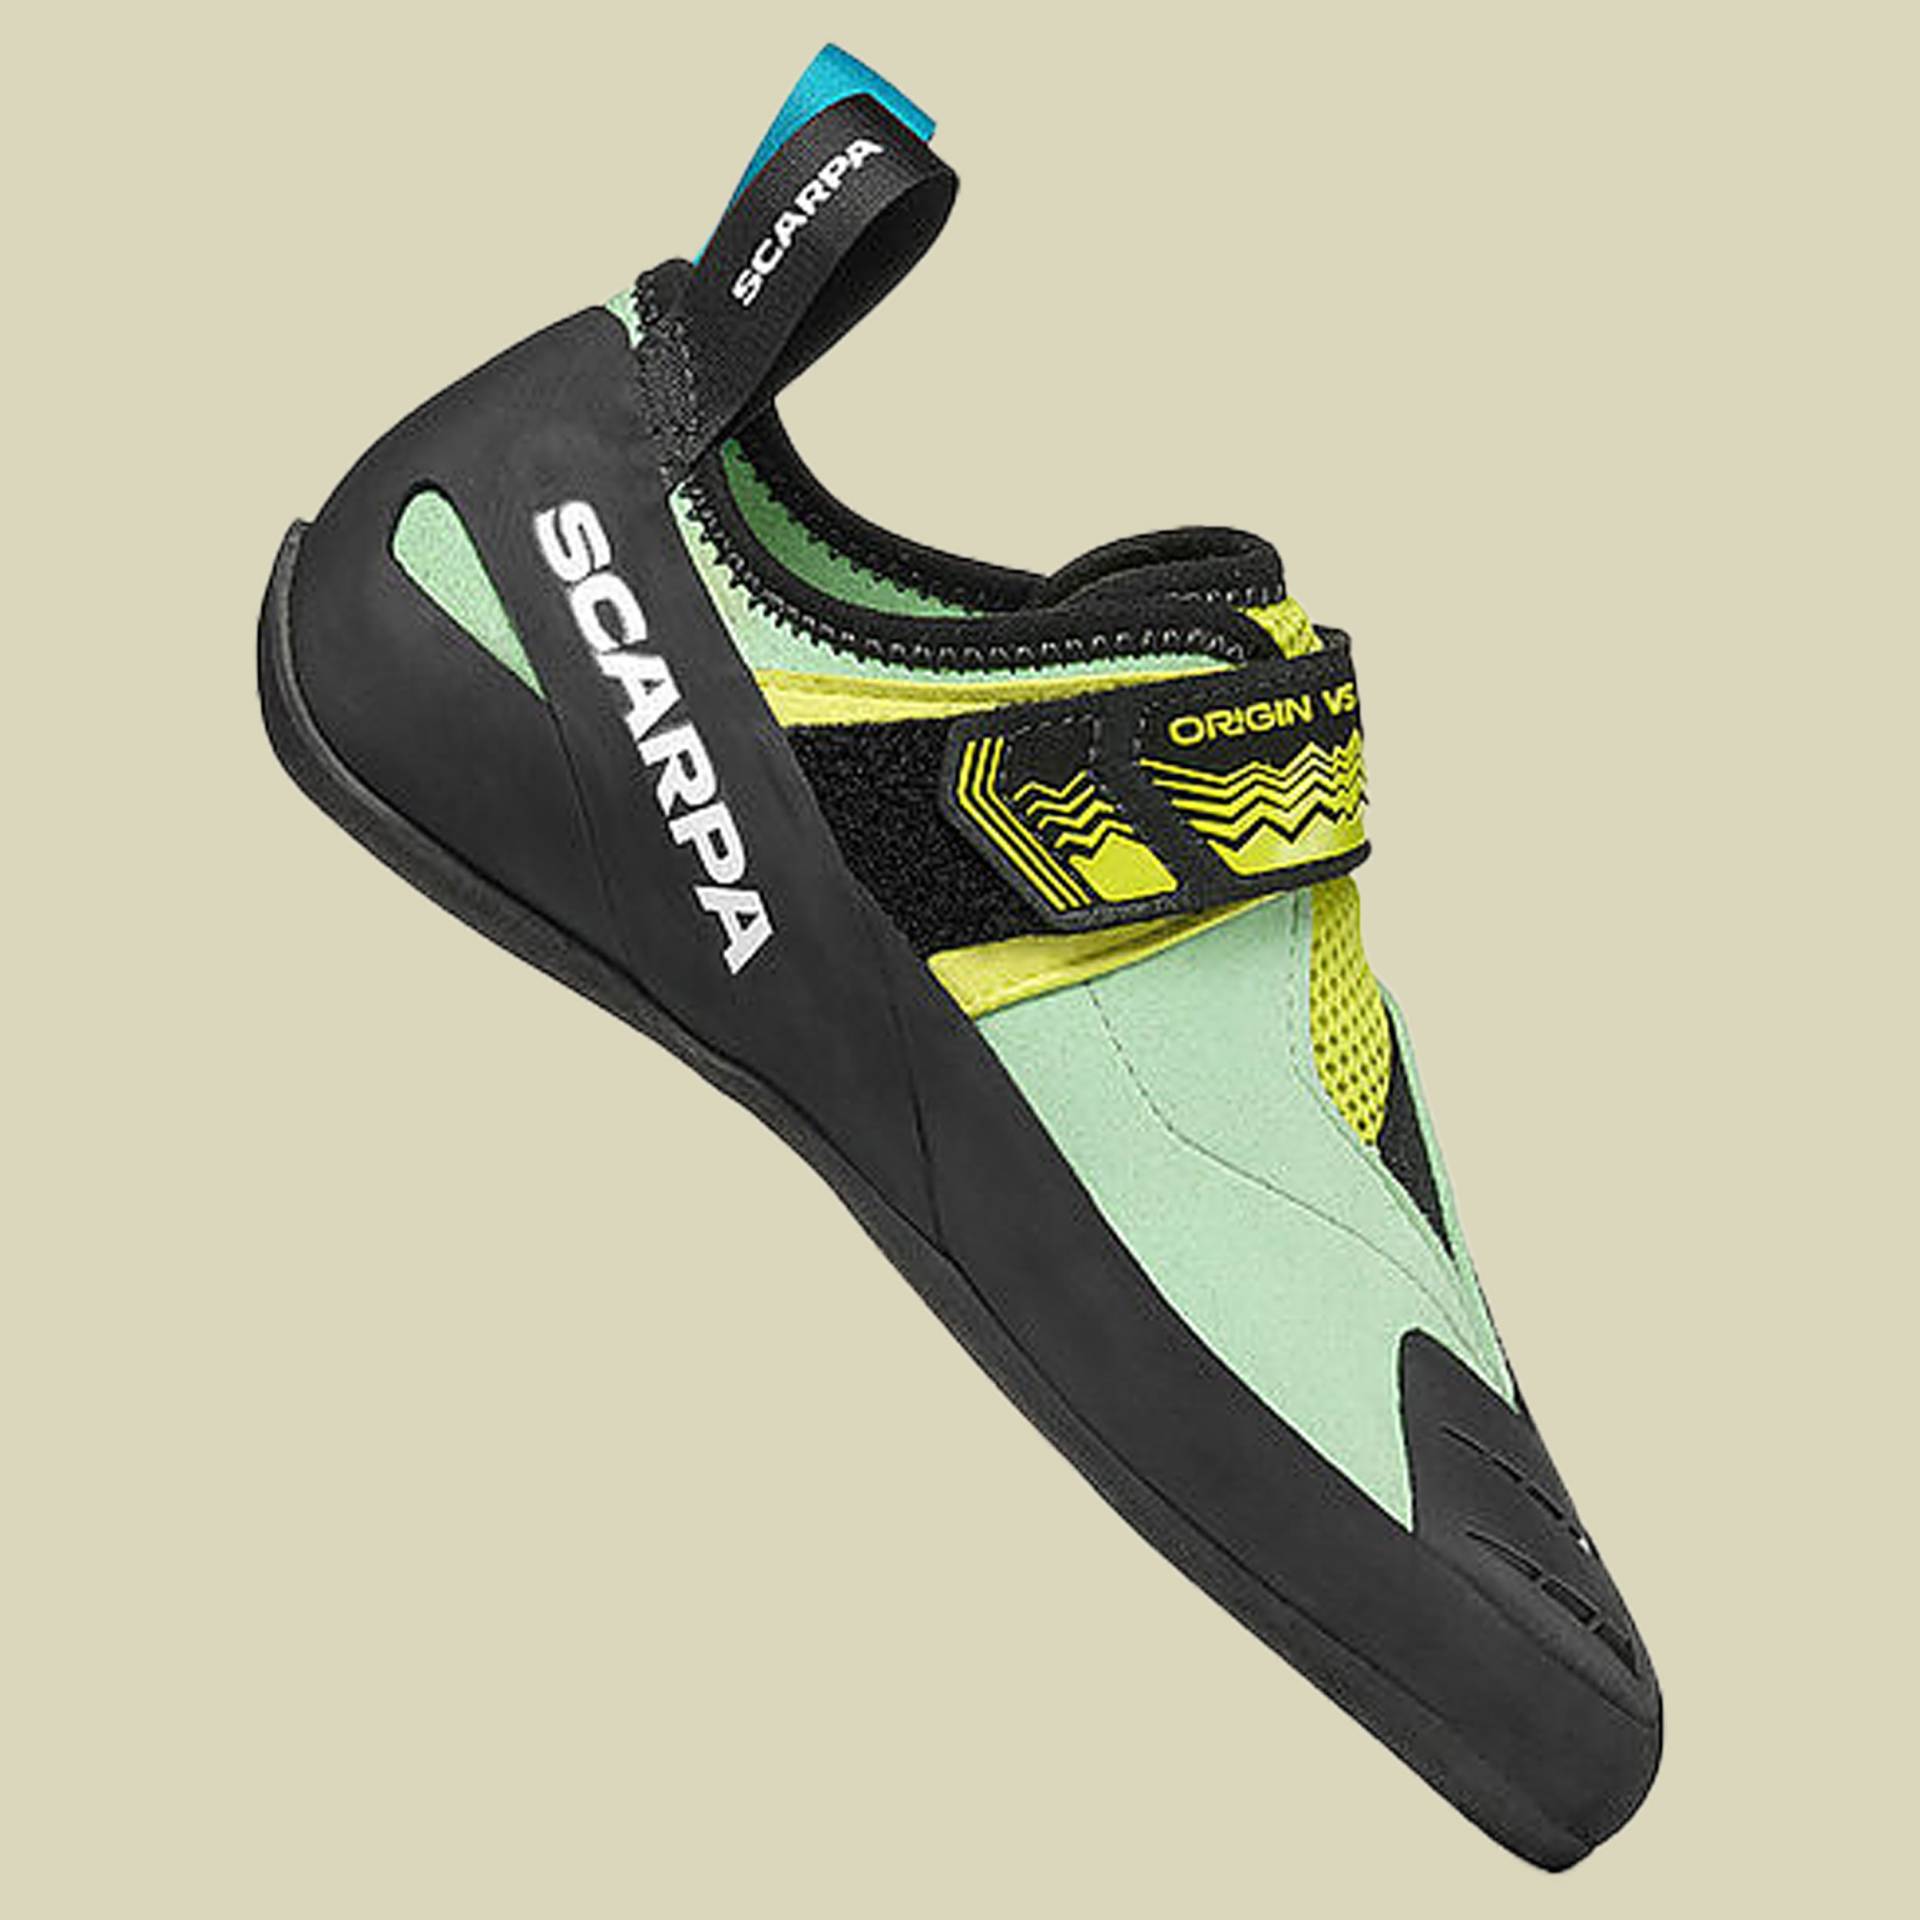 Origin VS Women Größe 38 Farbe pastel green/lime von Scarpa Schuhe